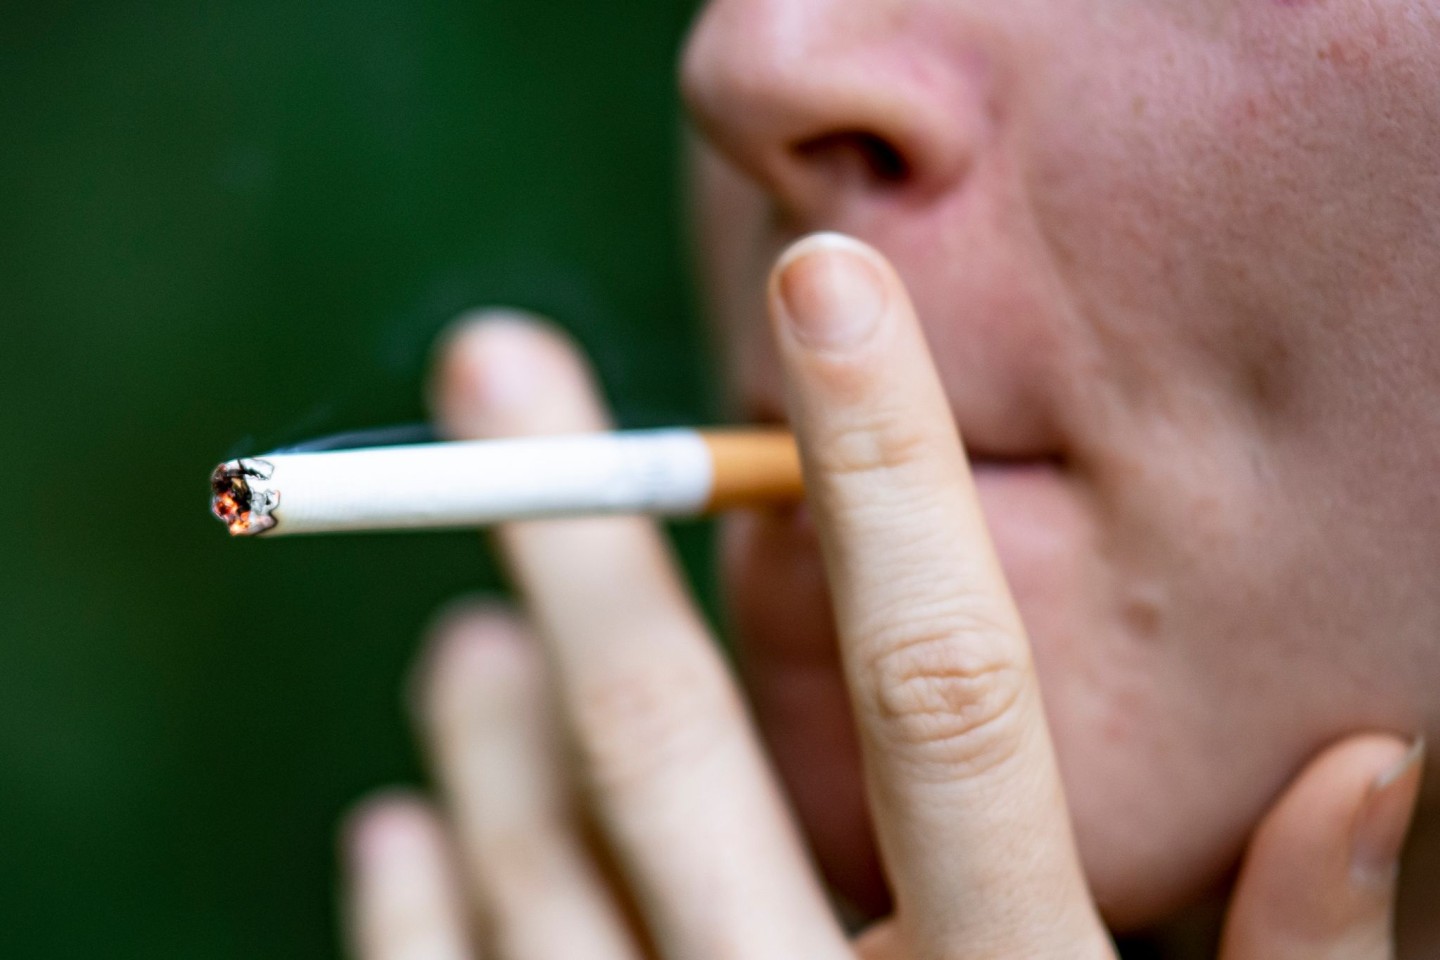 Forschende sehen einen Zusammenhang bei Rauchern und einem höheren Risiko für schwere Covid-Verläufe.